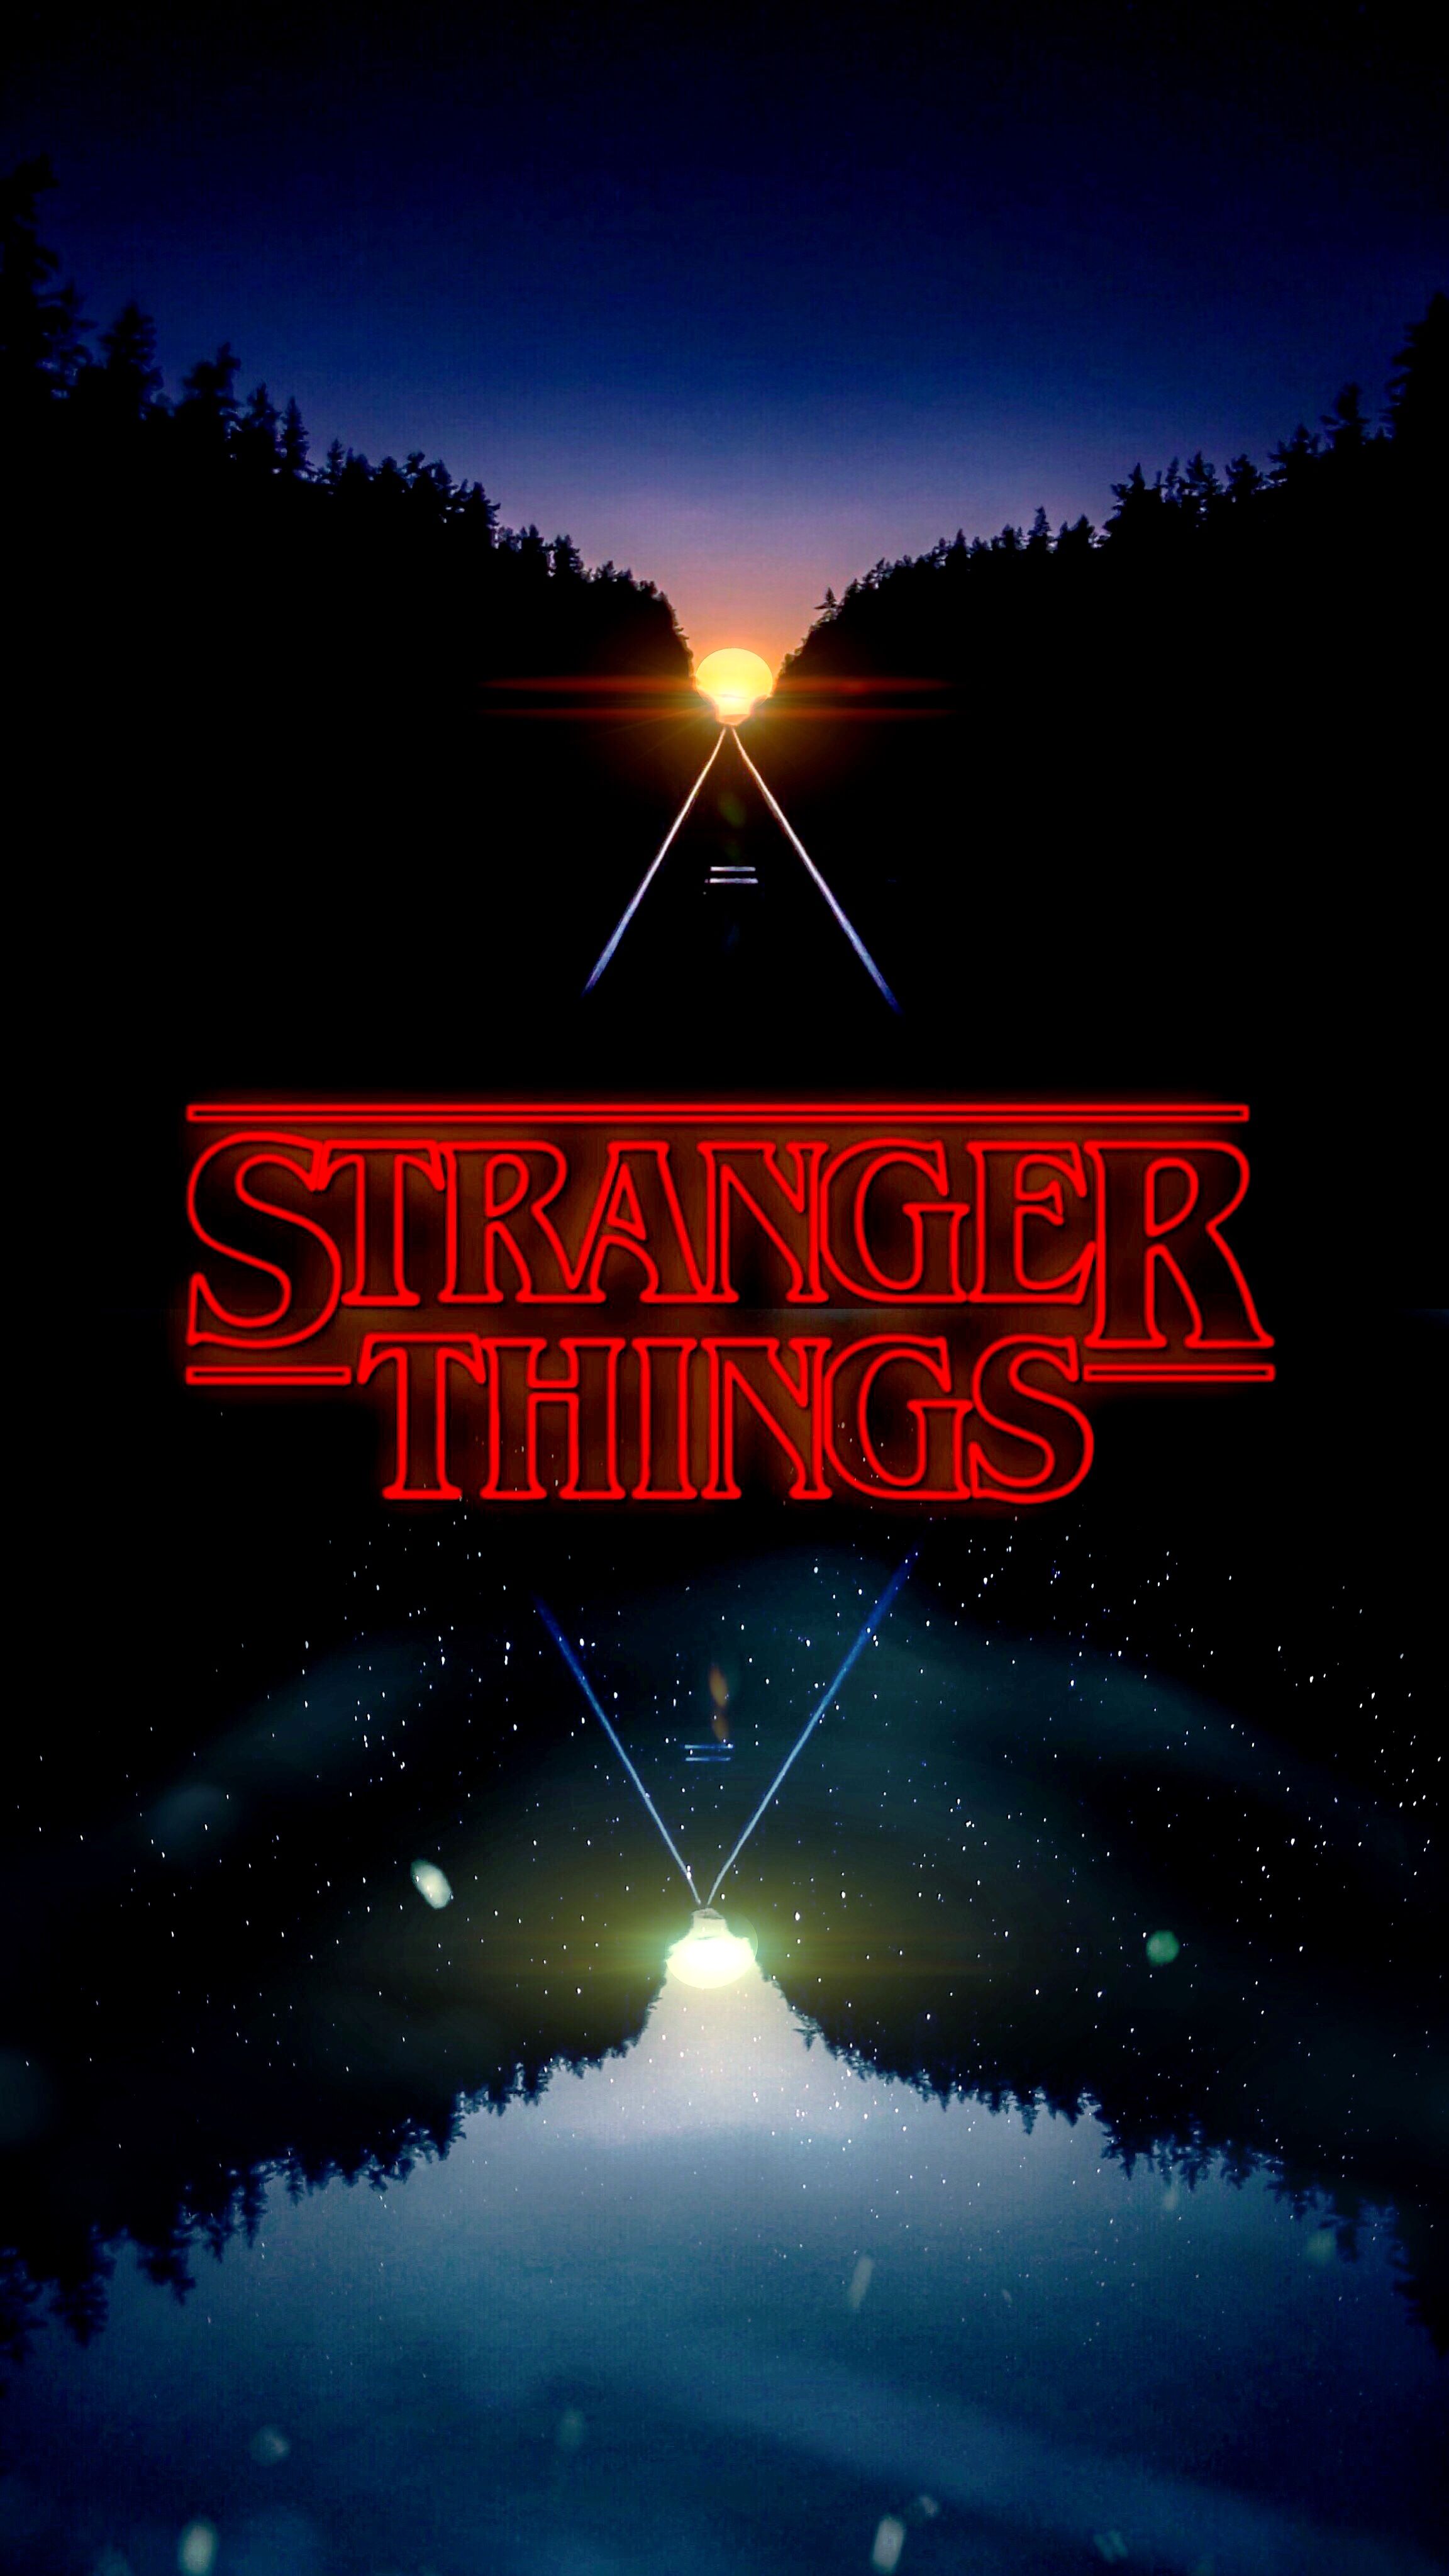 Fondos de pantalla de Stranger Things que diseñé y edité en mi iPhone. Disfruta